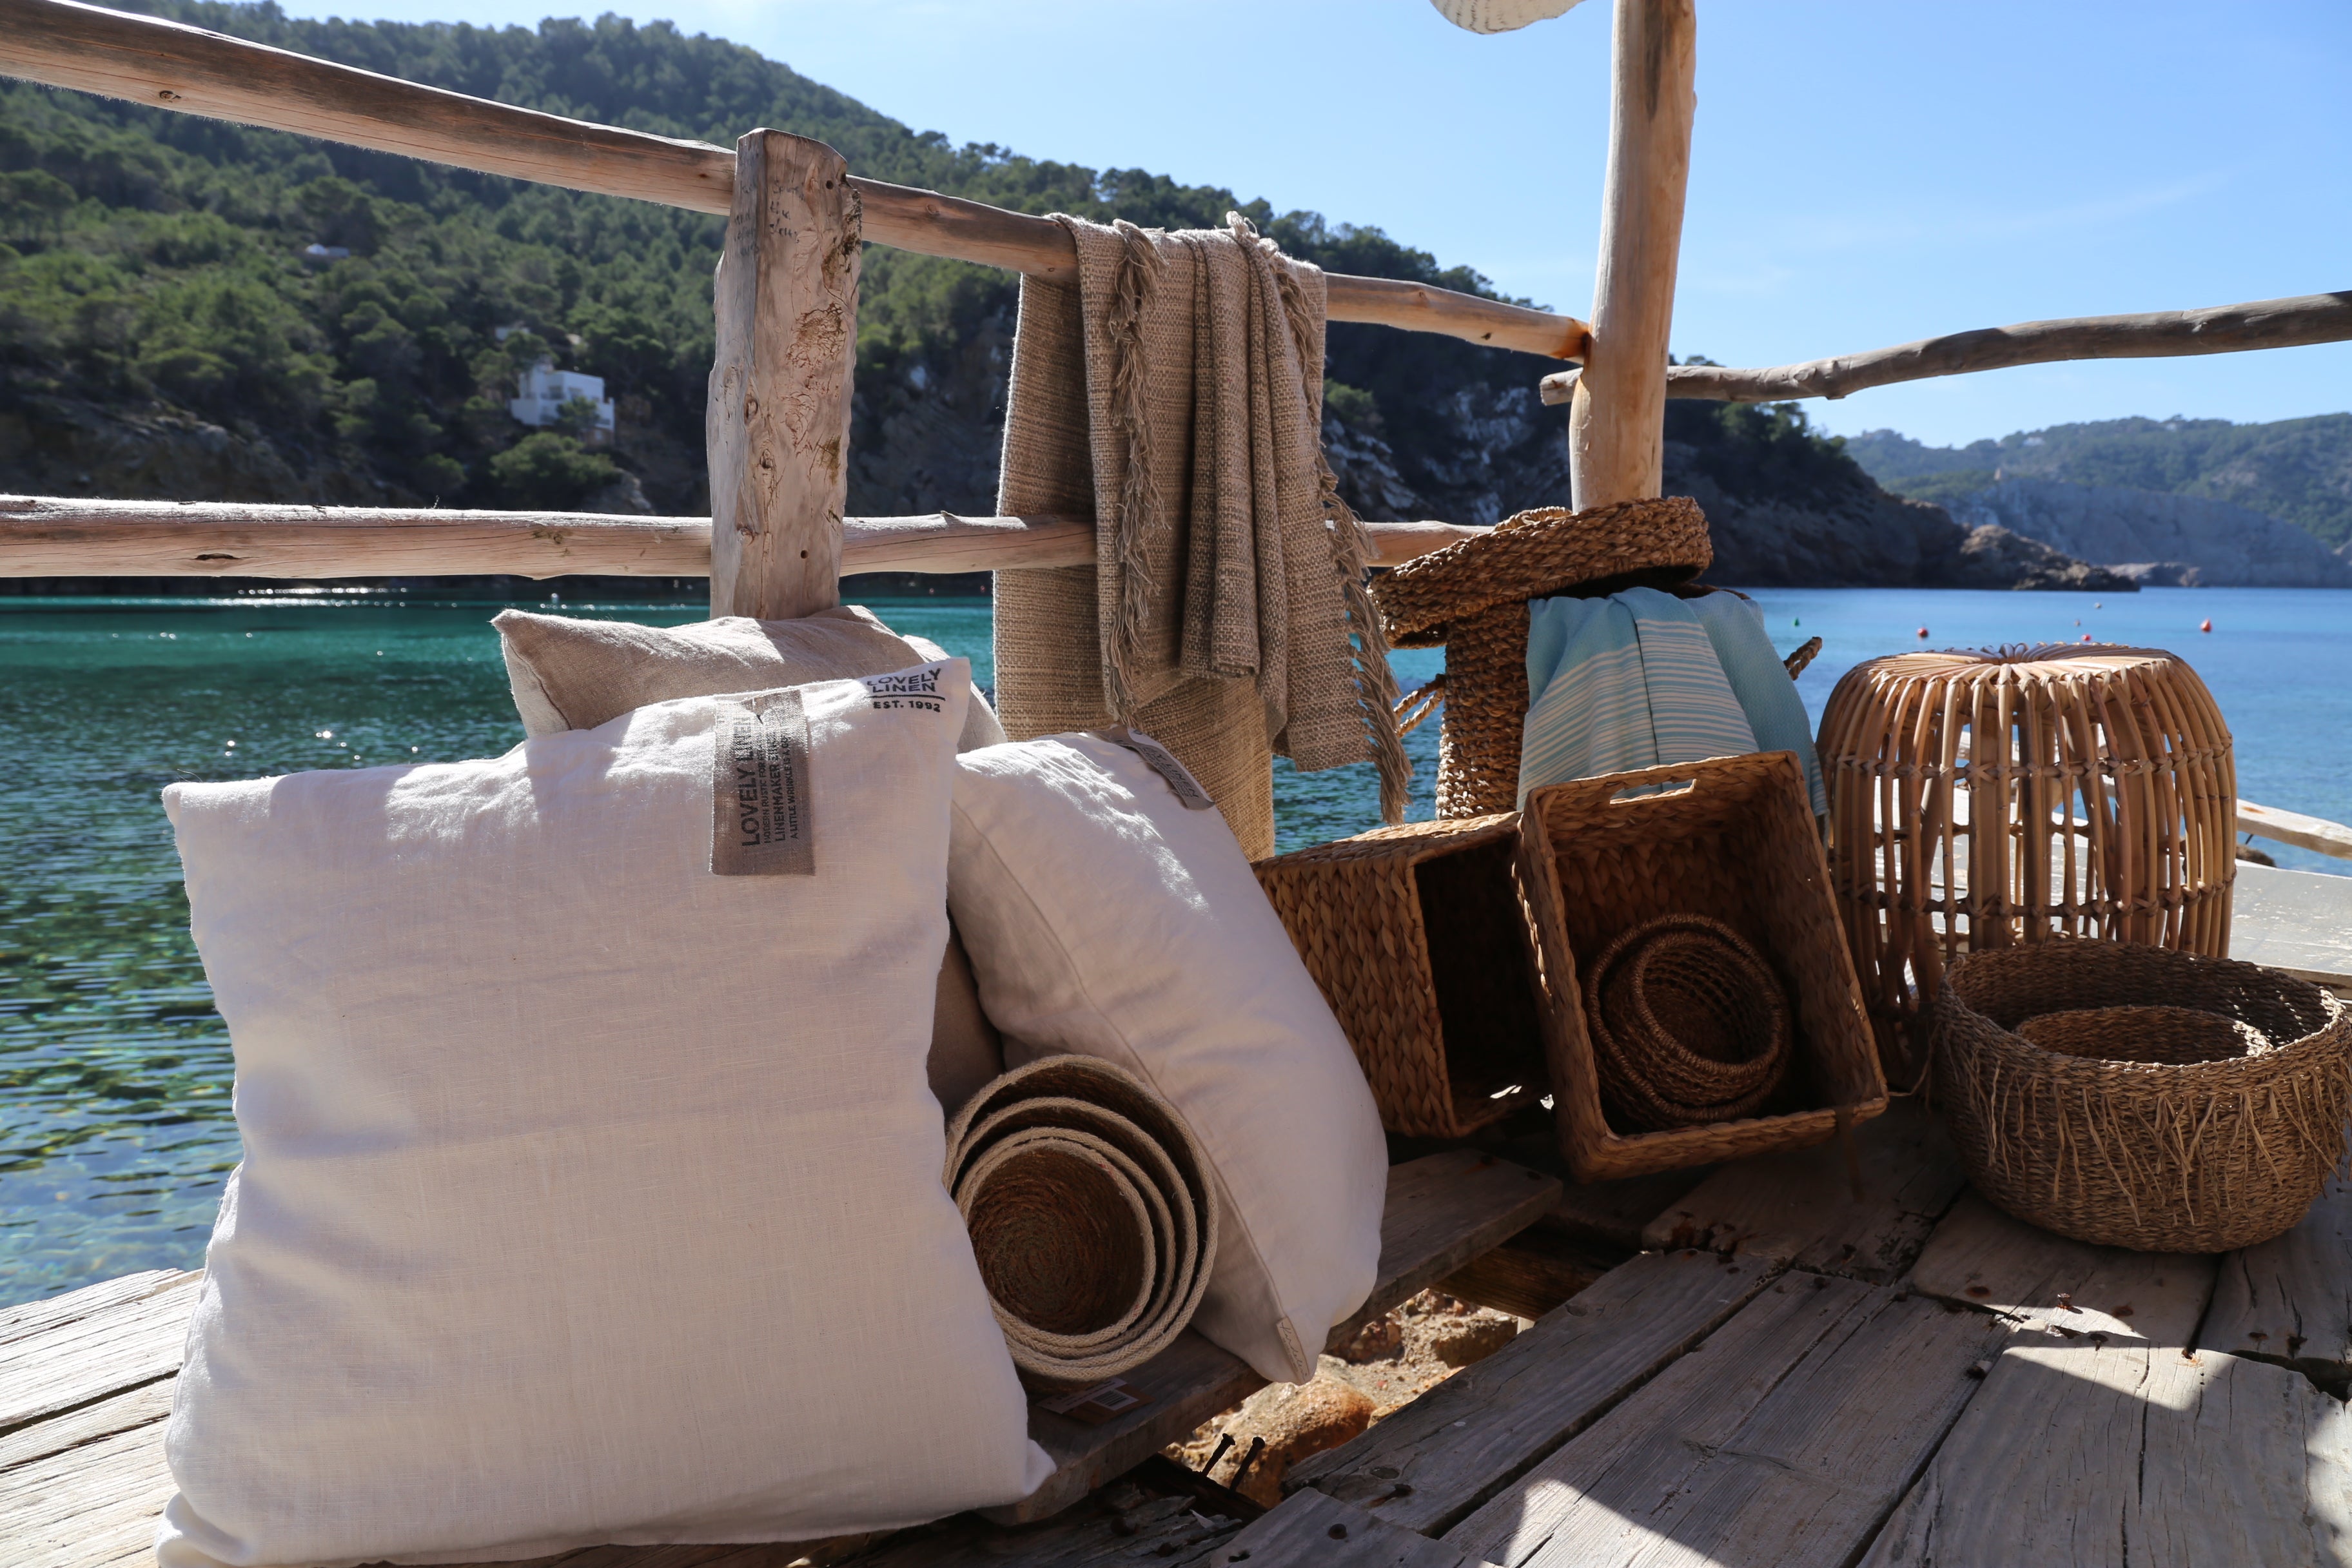 La maison d'Ibiza photo d'accueil bord de mer